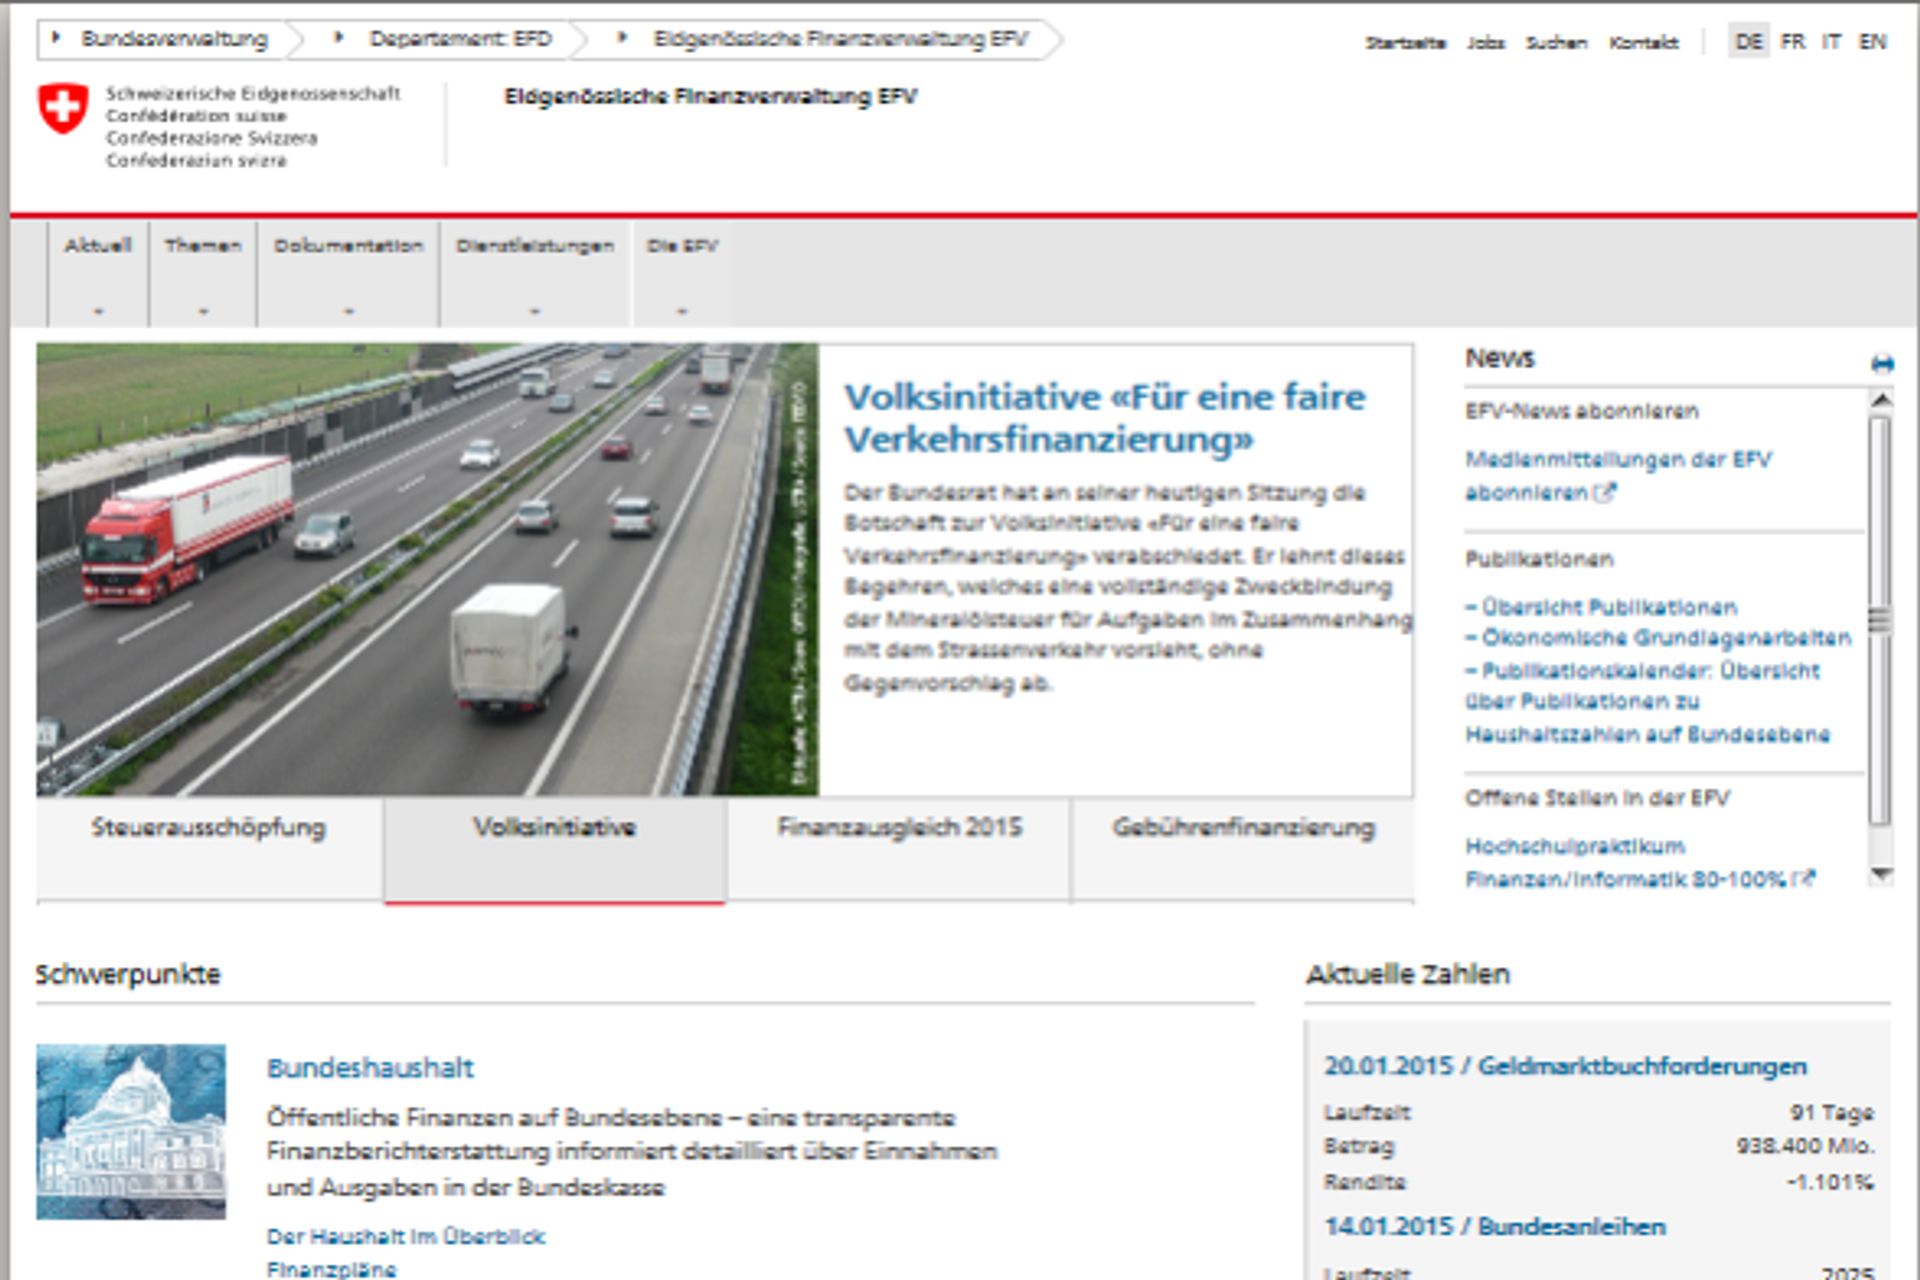 Ο σχεδιασμός ιστοσελίδων των ιστοσελίδων της ομοσπονδιακής διοίκησης της Ελβετικής Συνομοσπονδίας